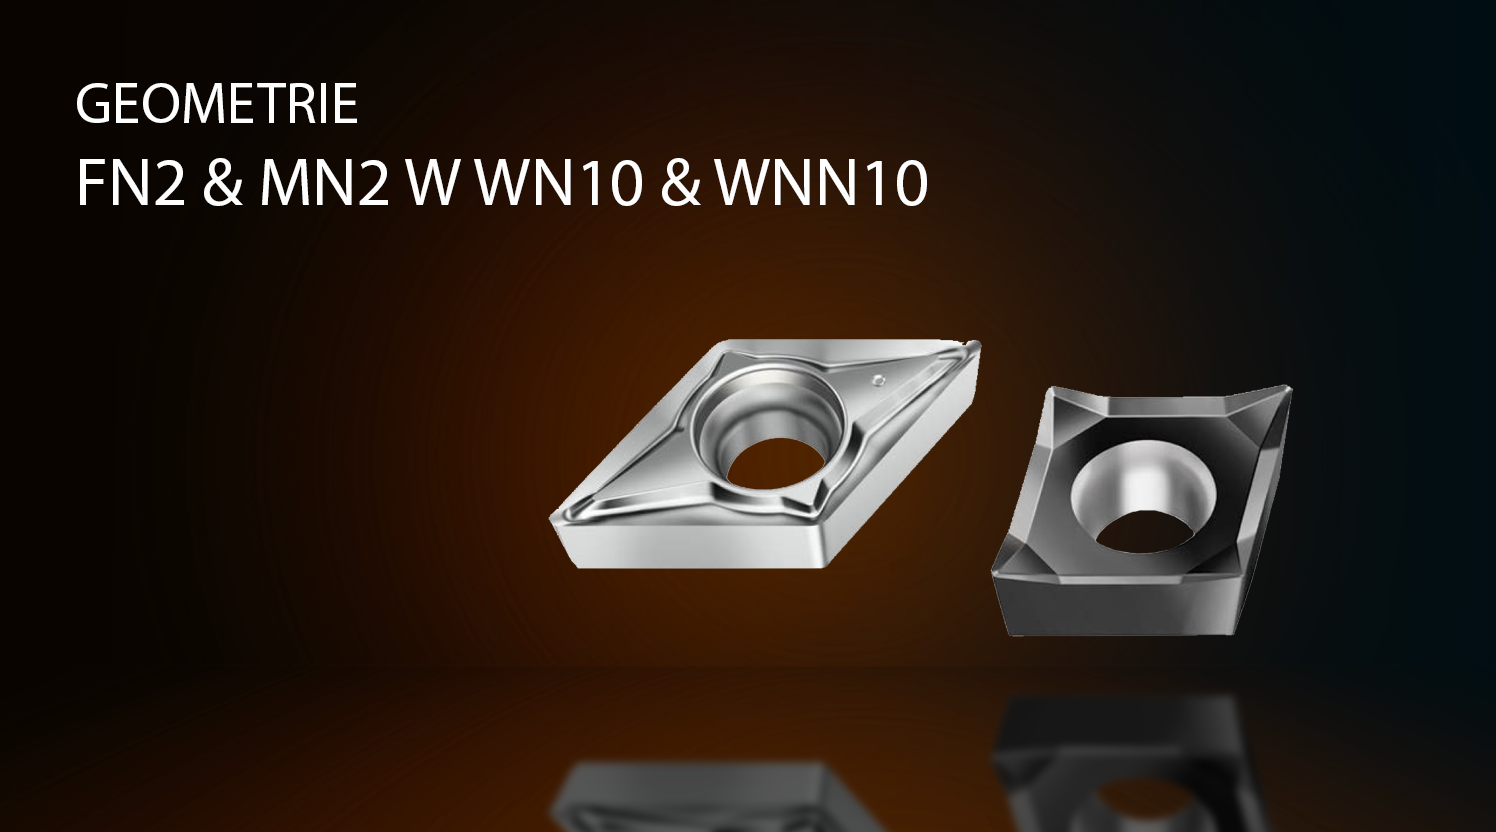 Geometrie FN2 & MN2 w WN10 & WNN10 w sklep narzędziowy toruń